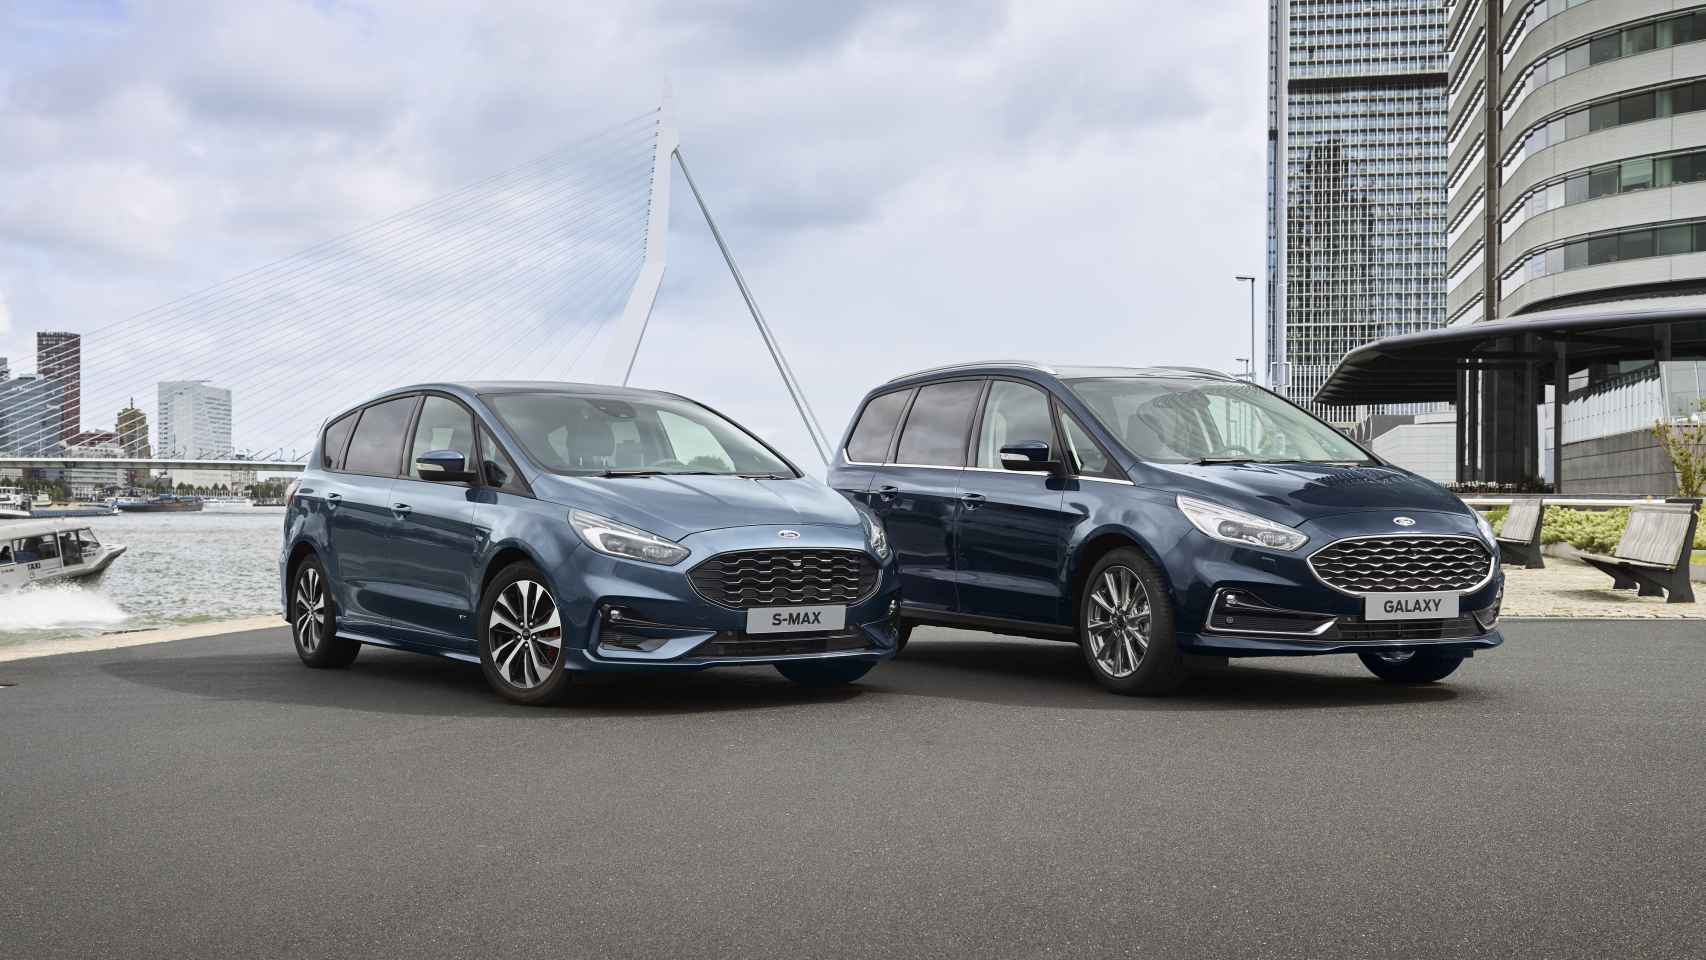 Los nuevos Ford S-Max y Galaxy híbridos que fabricará Ford en Almussafes.